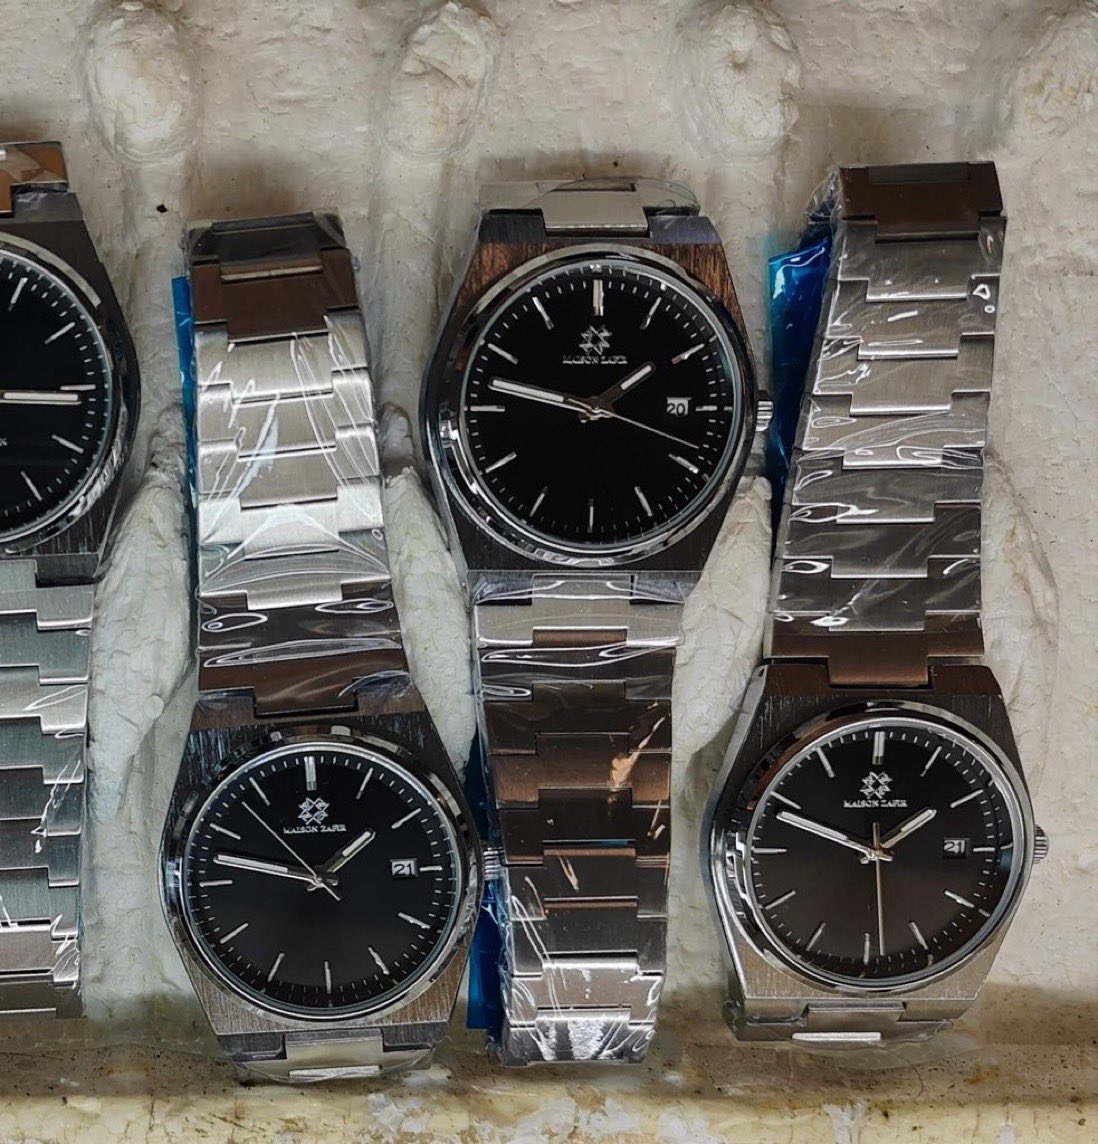 Une nouvelle collection de montres arrivent bientôt chez Maison ZAFIR inhsaa Allah ! 😍⌚️ Votre avis 👇🏼👇🏼